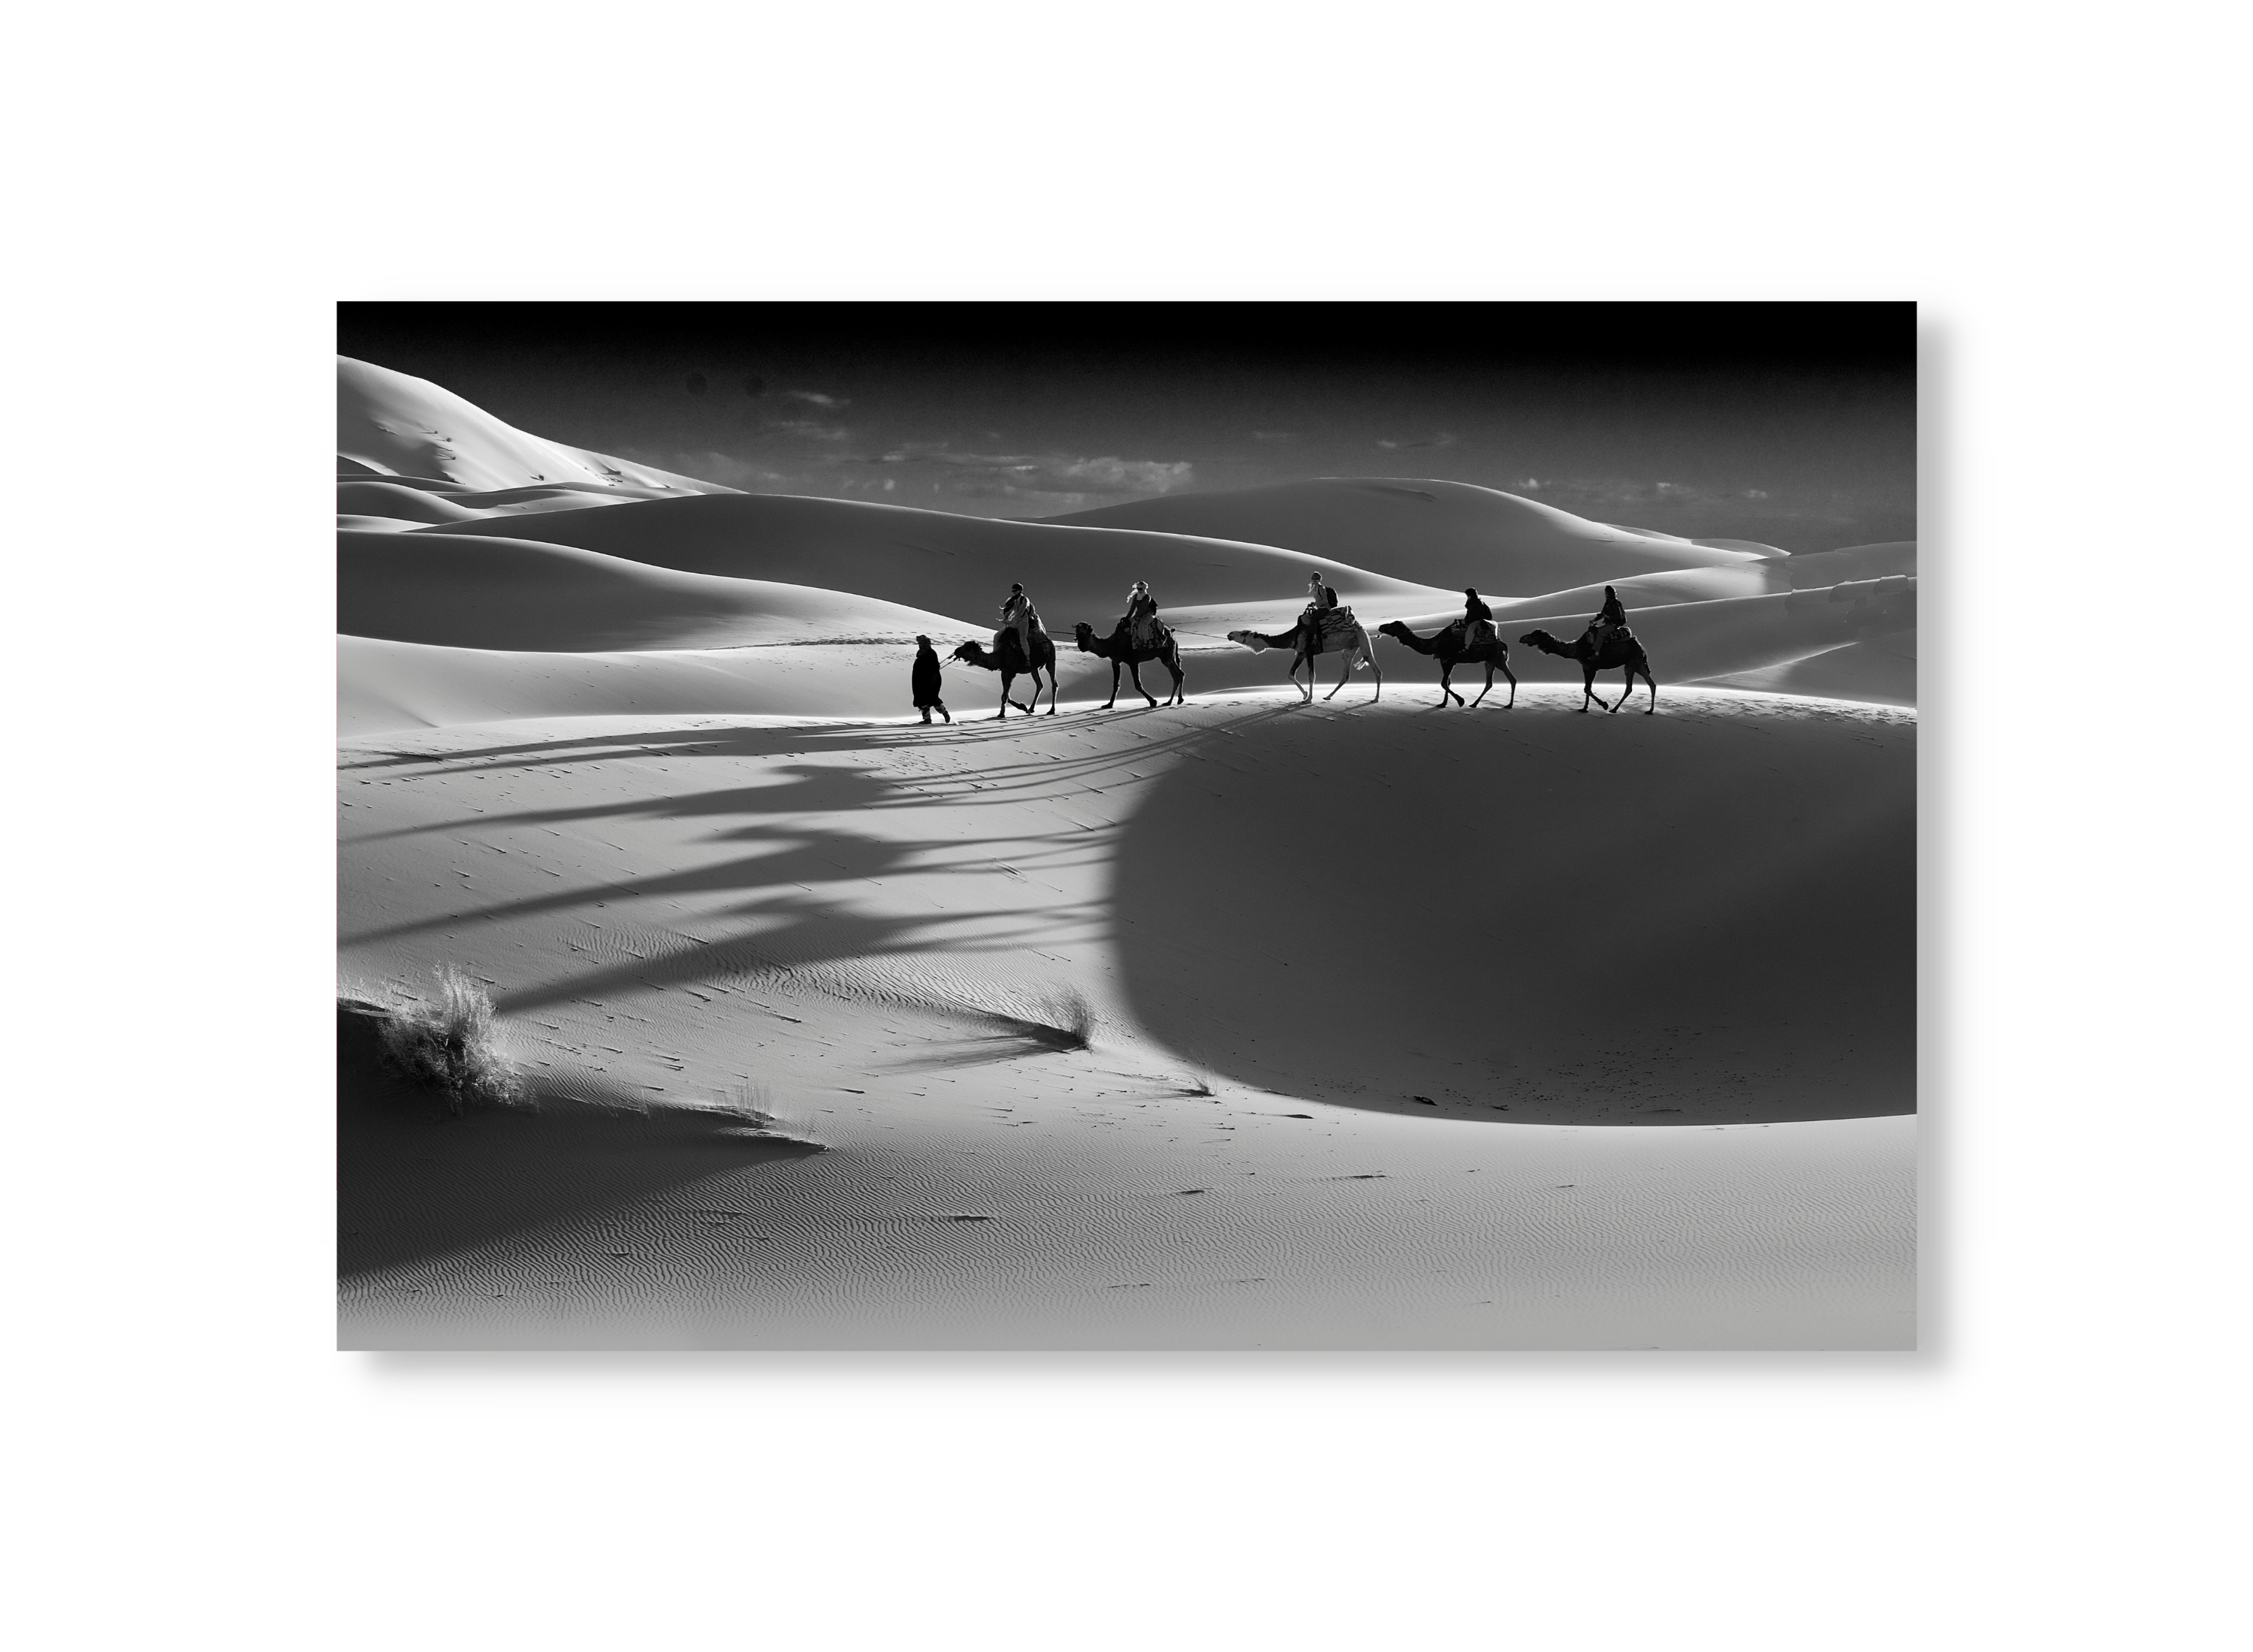 Sahara Camels